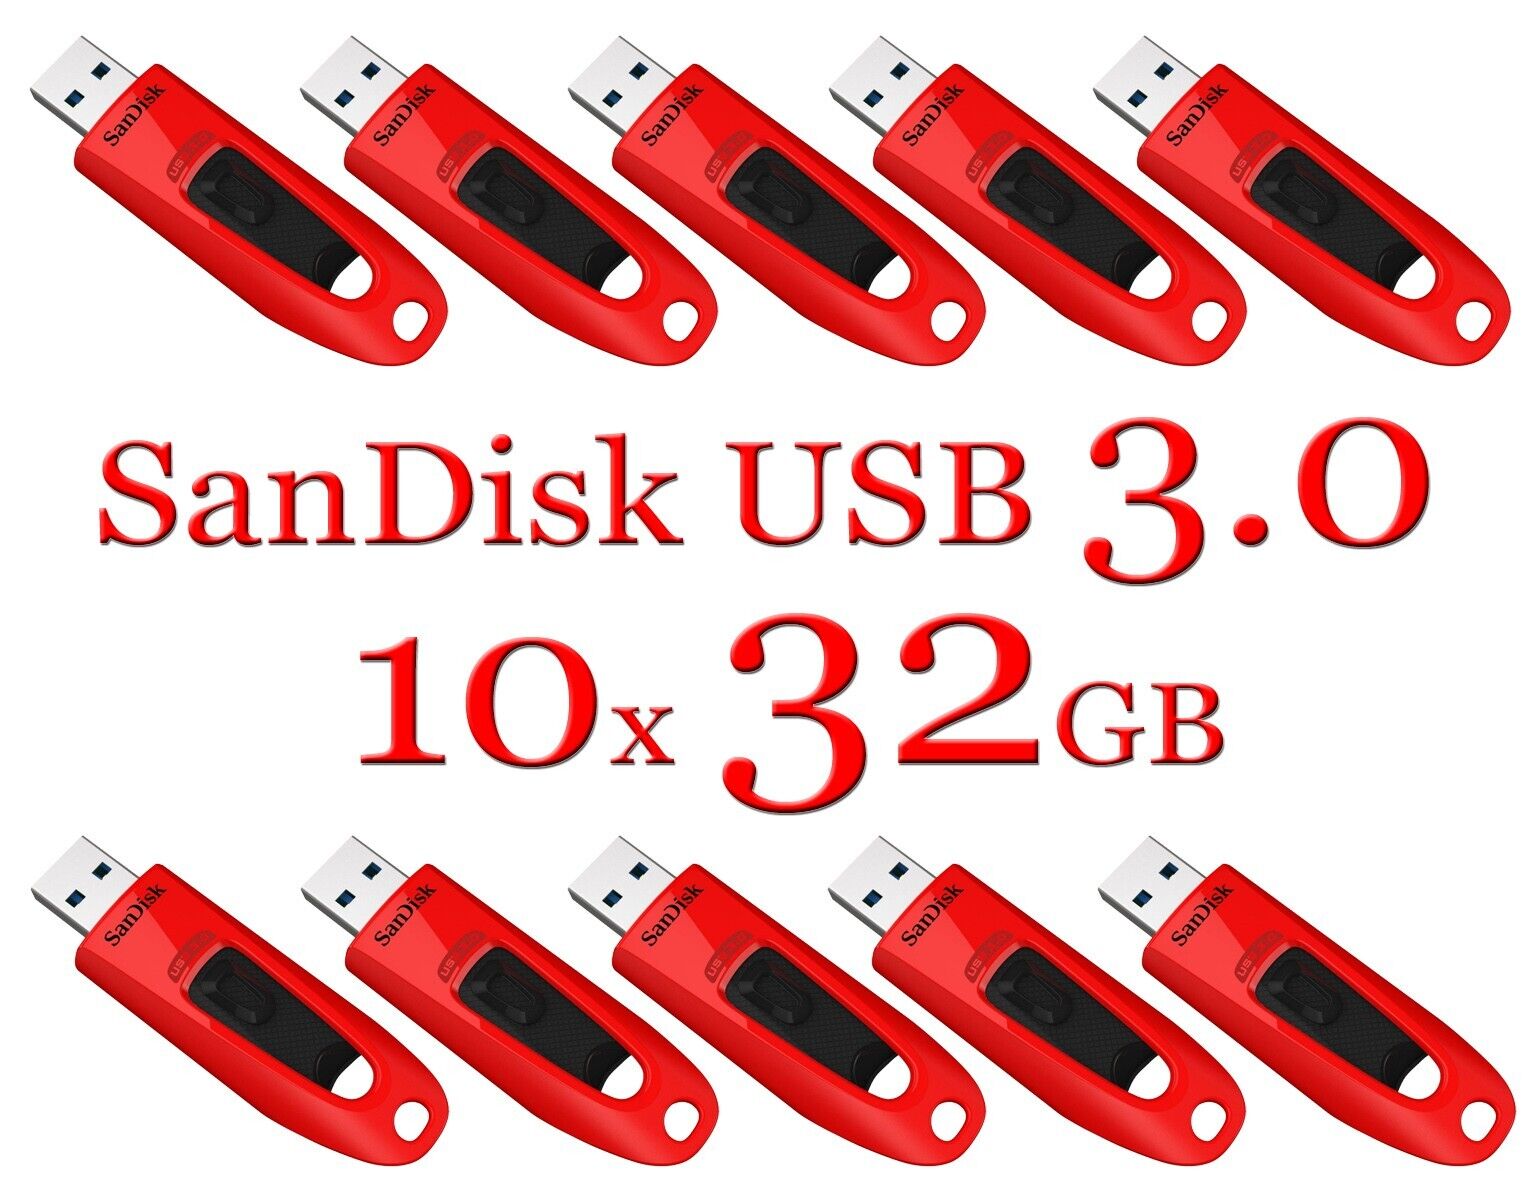 SanDisk 32GB LOT 10x ULTRA USB 3.0 flash drive SDCZ48-032G 32 GB read 100 MB/s